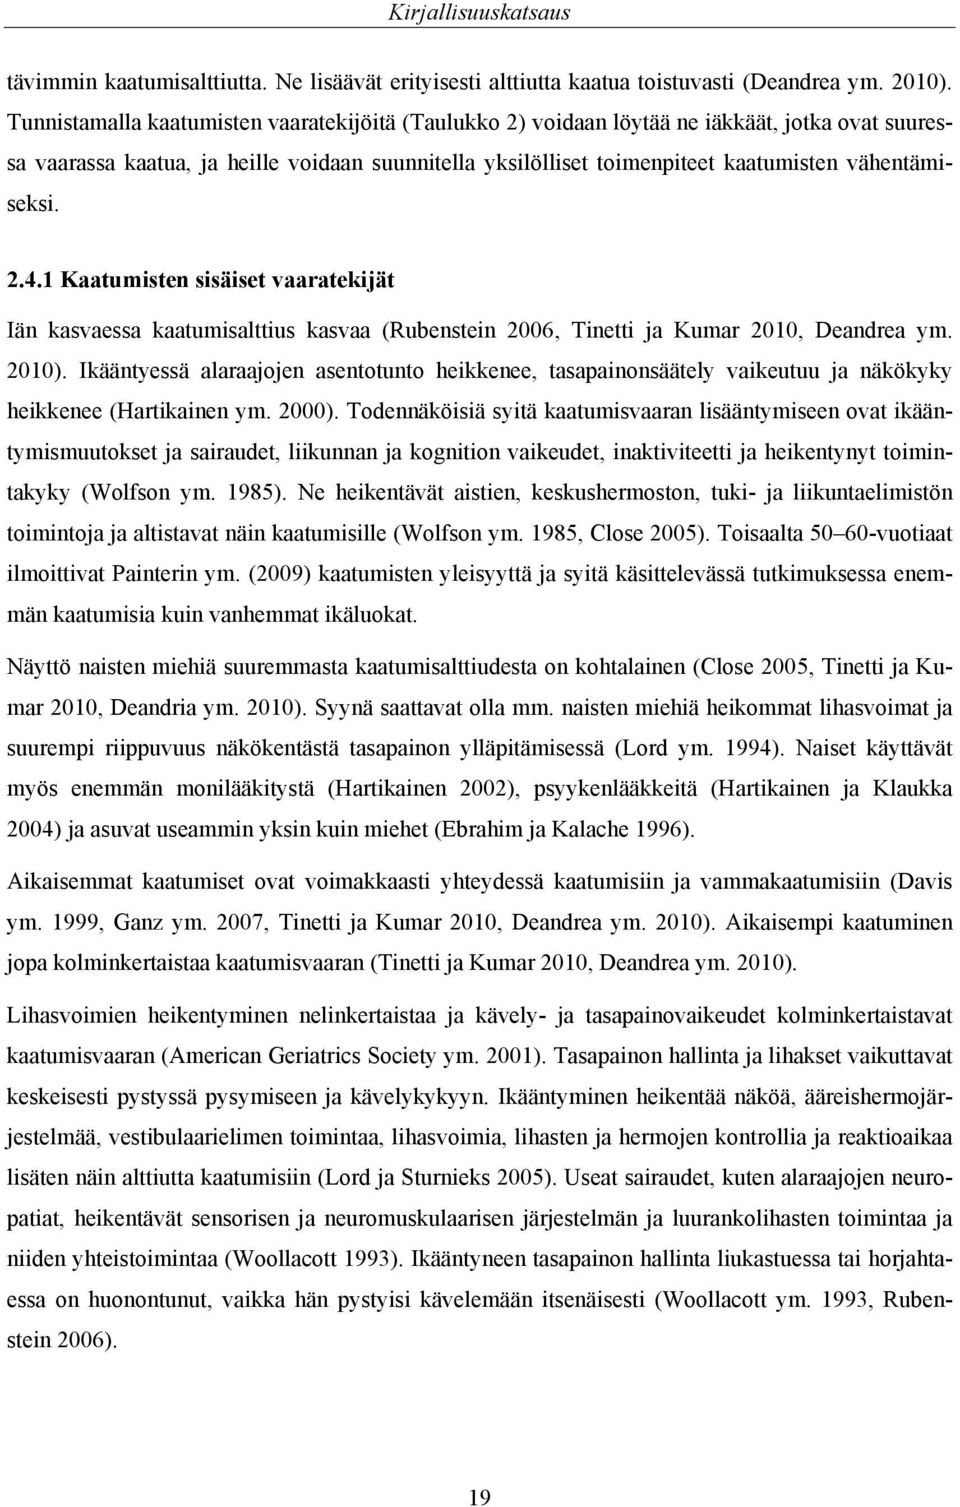 vähentämiseksi. 2.4.1 Kaatumisten sisäiset vaaratekijät Iän kasvaessa kaatumisalttius kasvaa (Rubenstein 2006, Tinetti ja Kumar 2010, Deandrea ym. 2010).